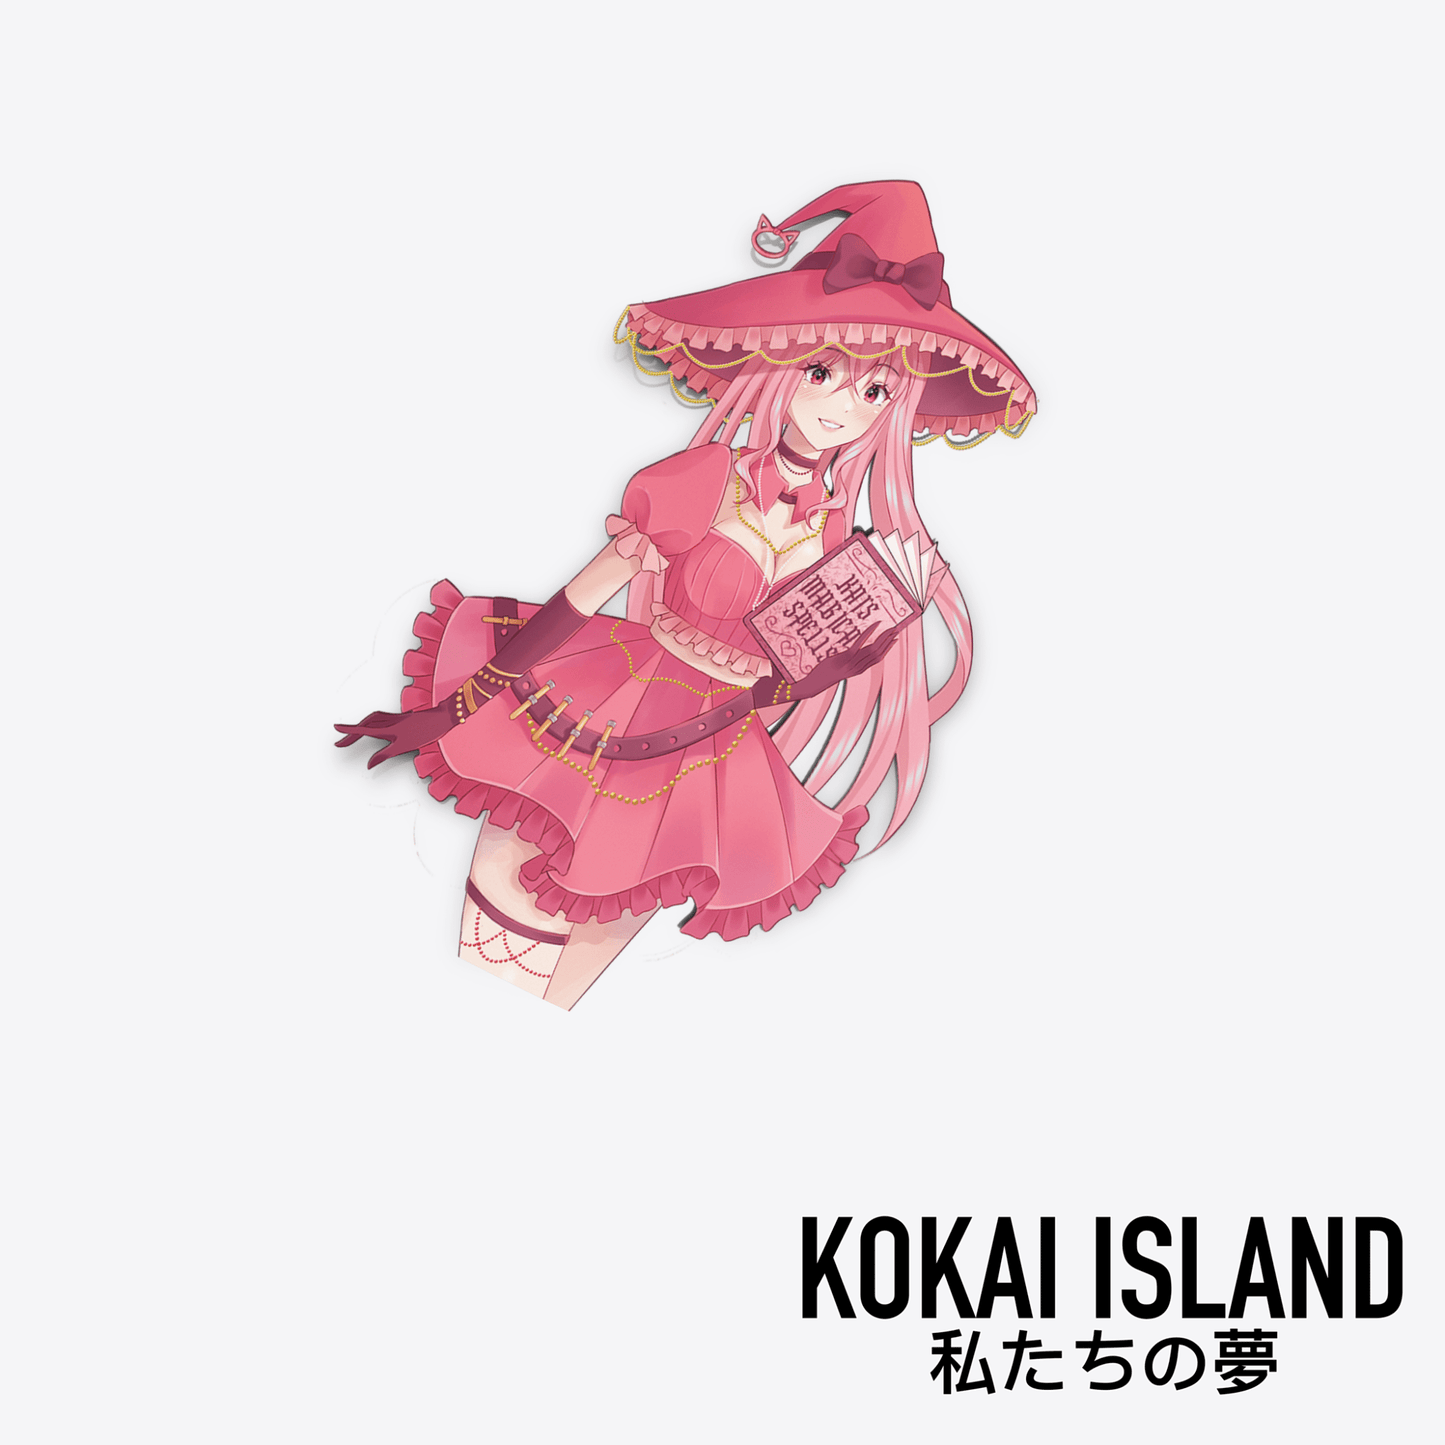 Kai Witch DecalDecalKokai Island